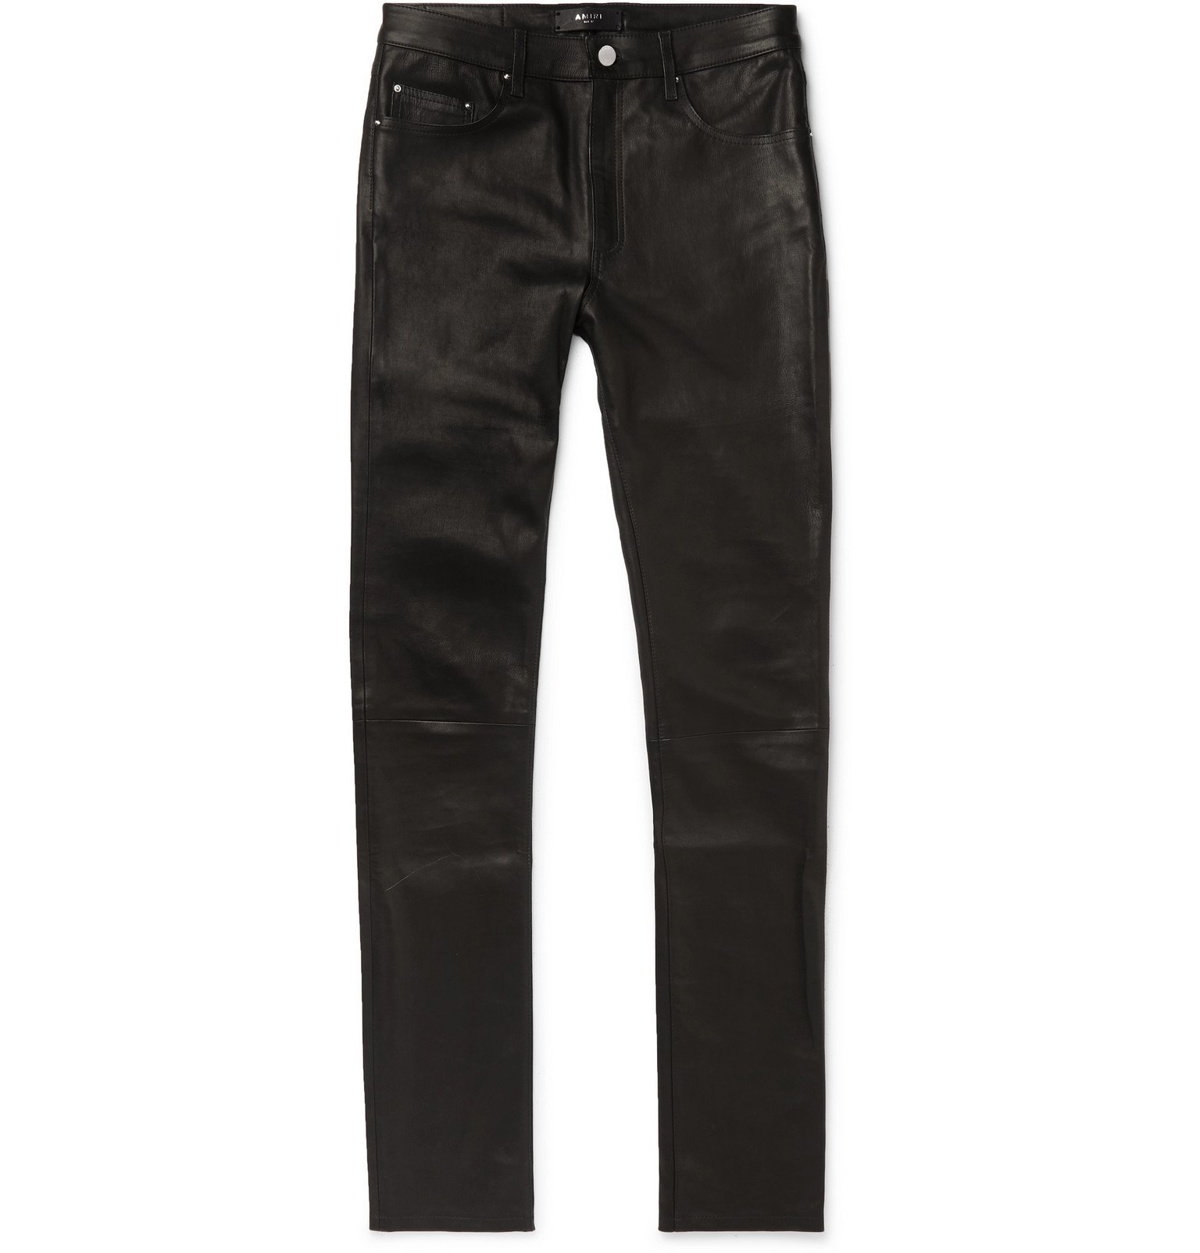 5-Pocket Faux-Leather Pants in Black | VENUS | Faux leather pants, Perfect  jeans, Leather pants